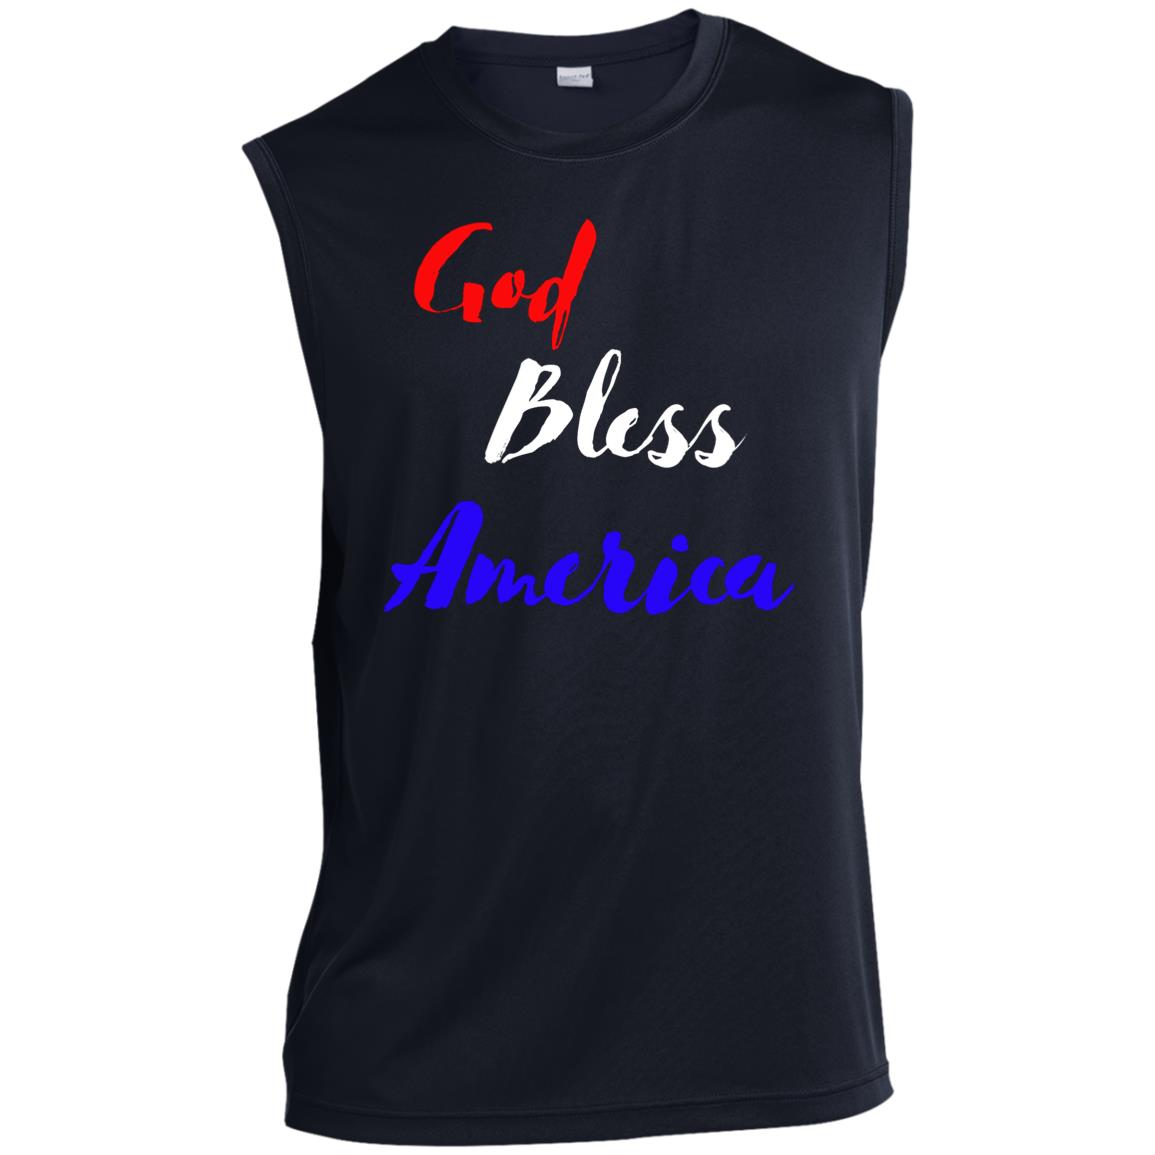 God bless America red white blue ST352 Men’s Sleeveless Performance Tee